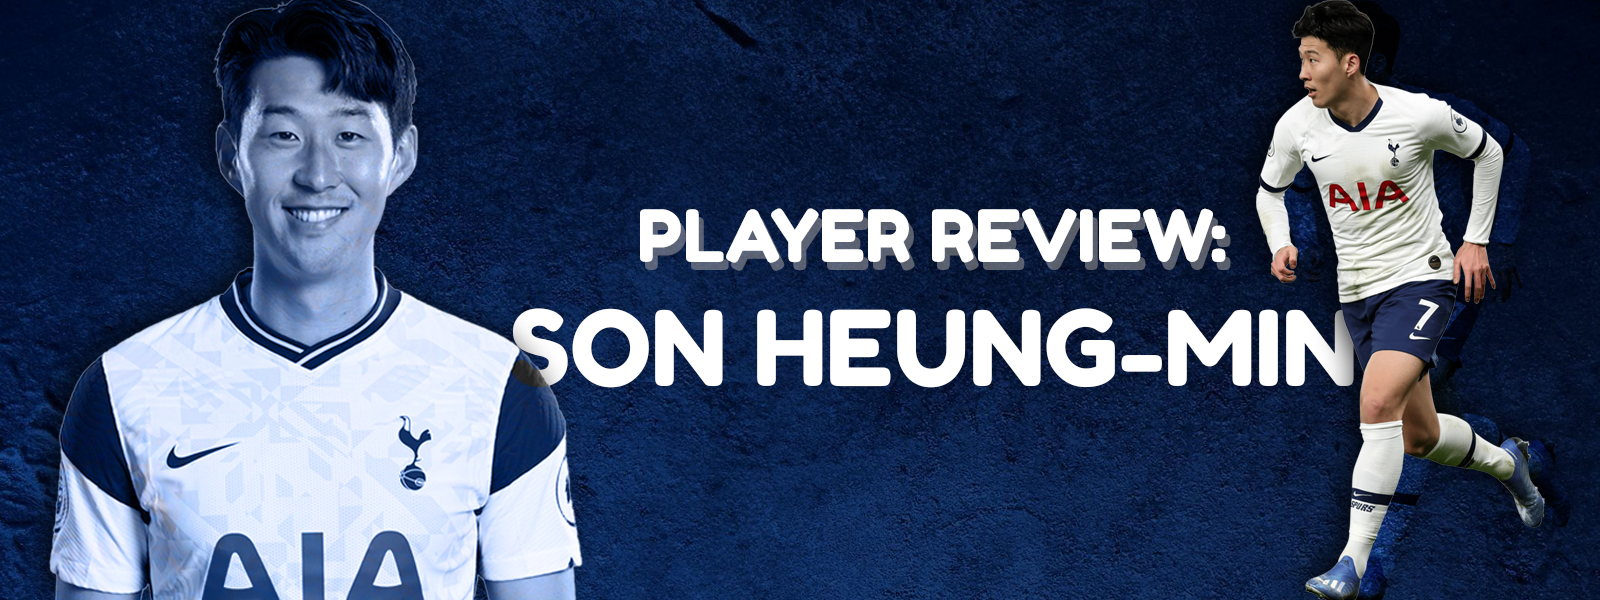 Son Heung-Min Footballer Reviews